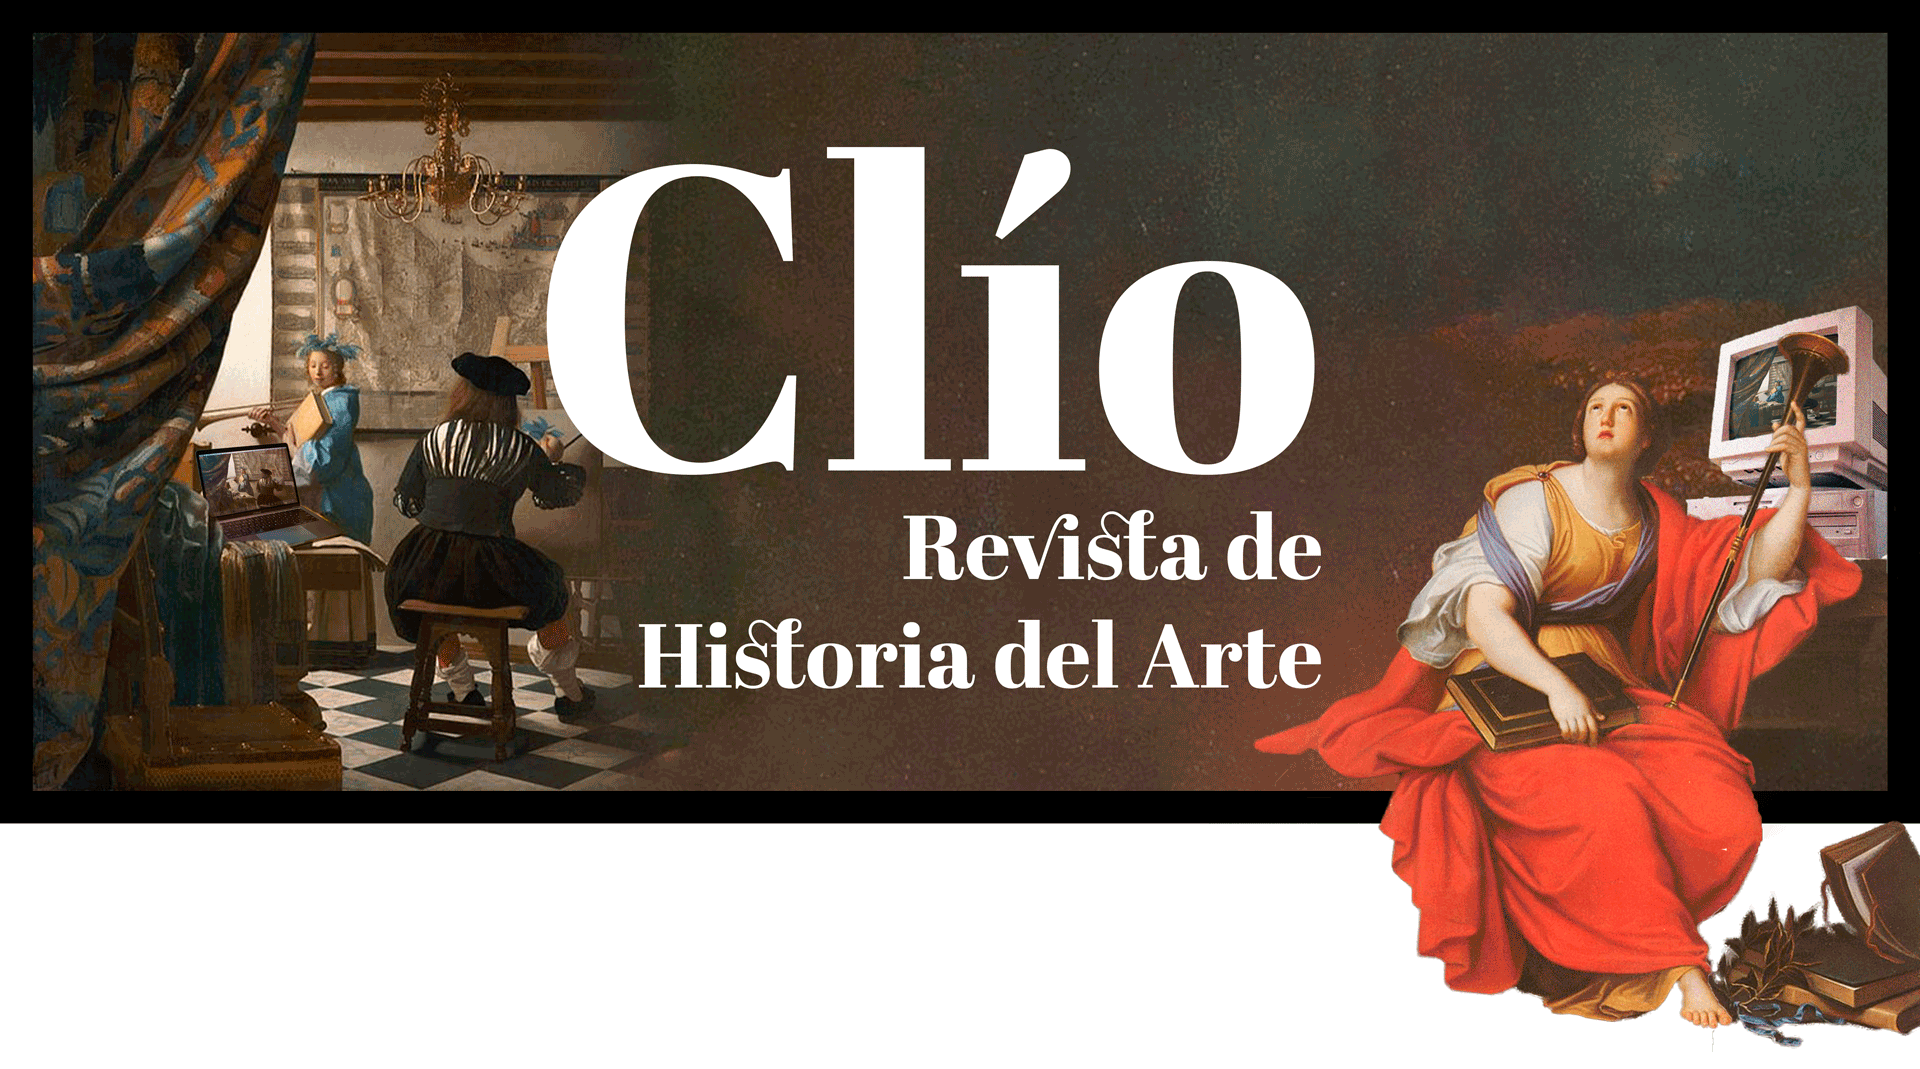 Clío Revista de Historia del Arte lanza su sexto número virtualmente